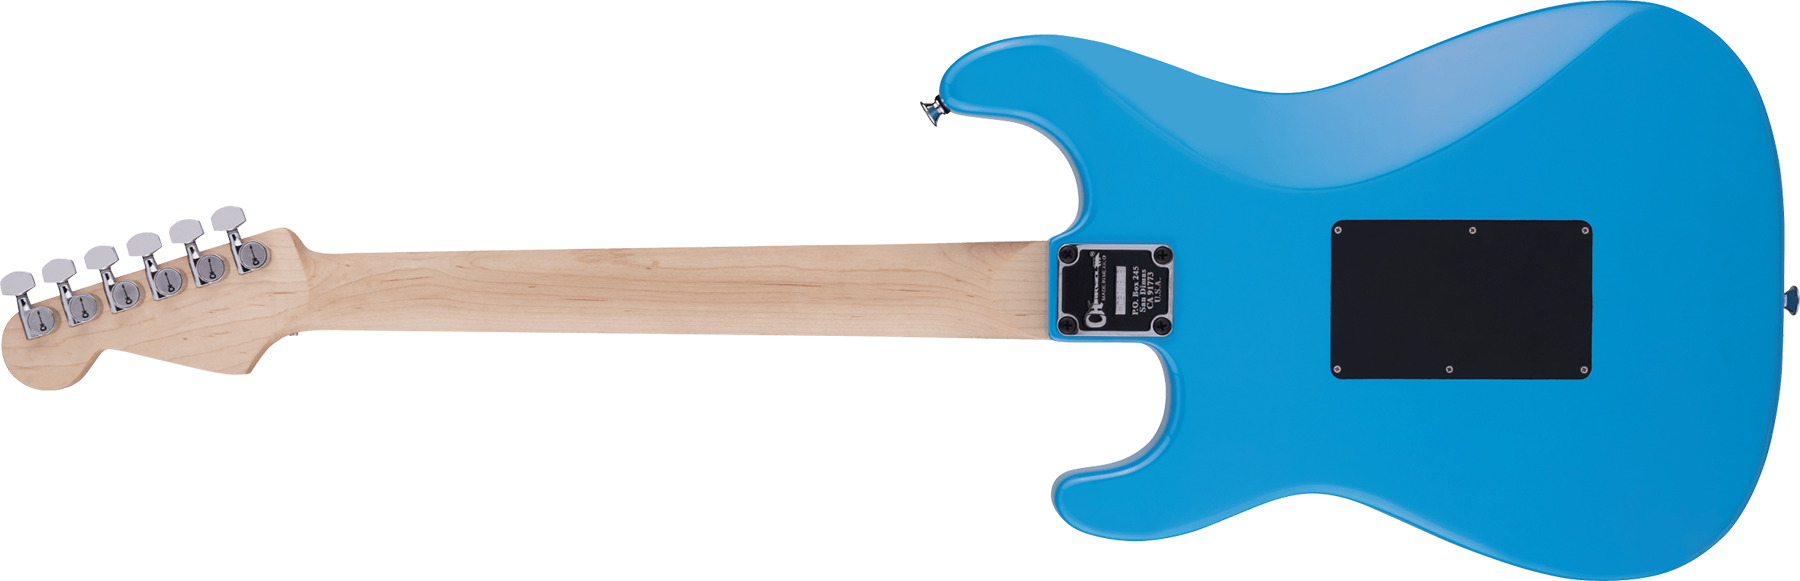 Charvel So-cal Style 1 Hsh Fr E Pro-mod Seymour Duncan Eb - Robbin's Egg Blue - E-Gitarre in Str-Form - Variation 1